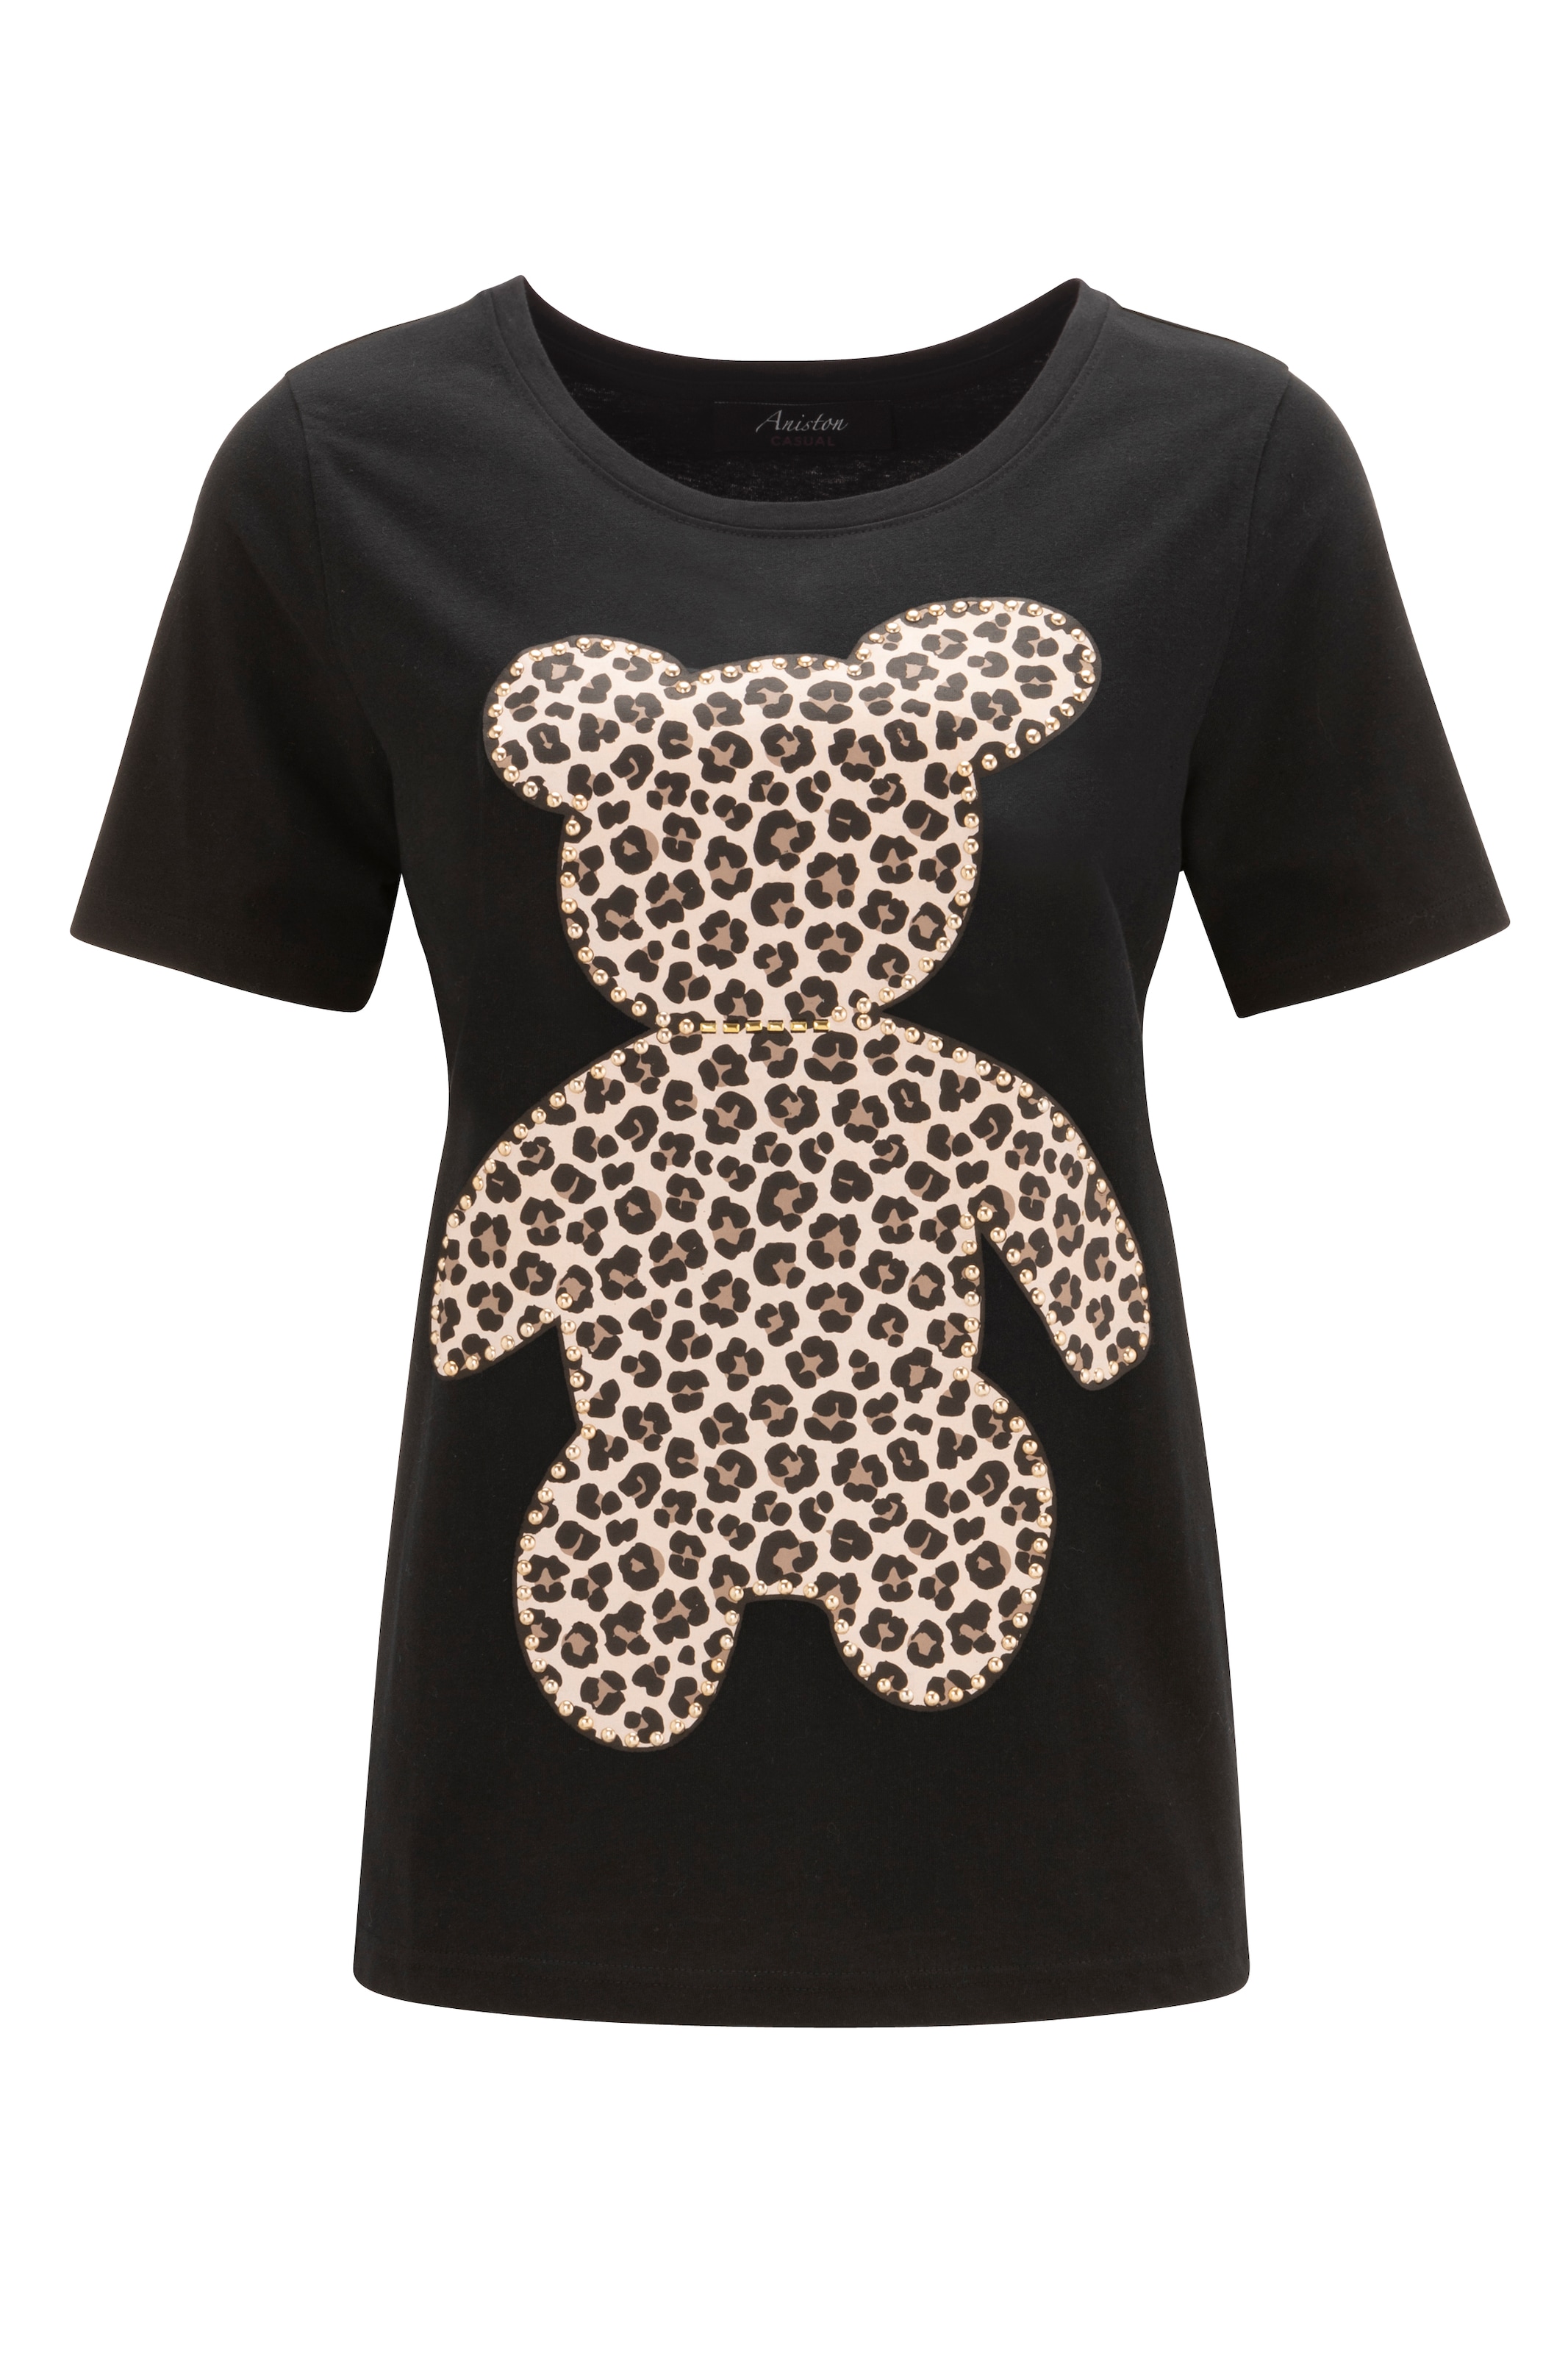 Aniston CASUAL KOLLEKTIOM - NEUE T-Shirt, ♕ mit Glanznieten bei verzierter Bärchen-Frontdruck